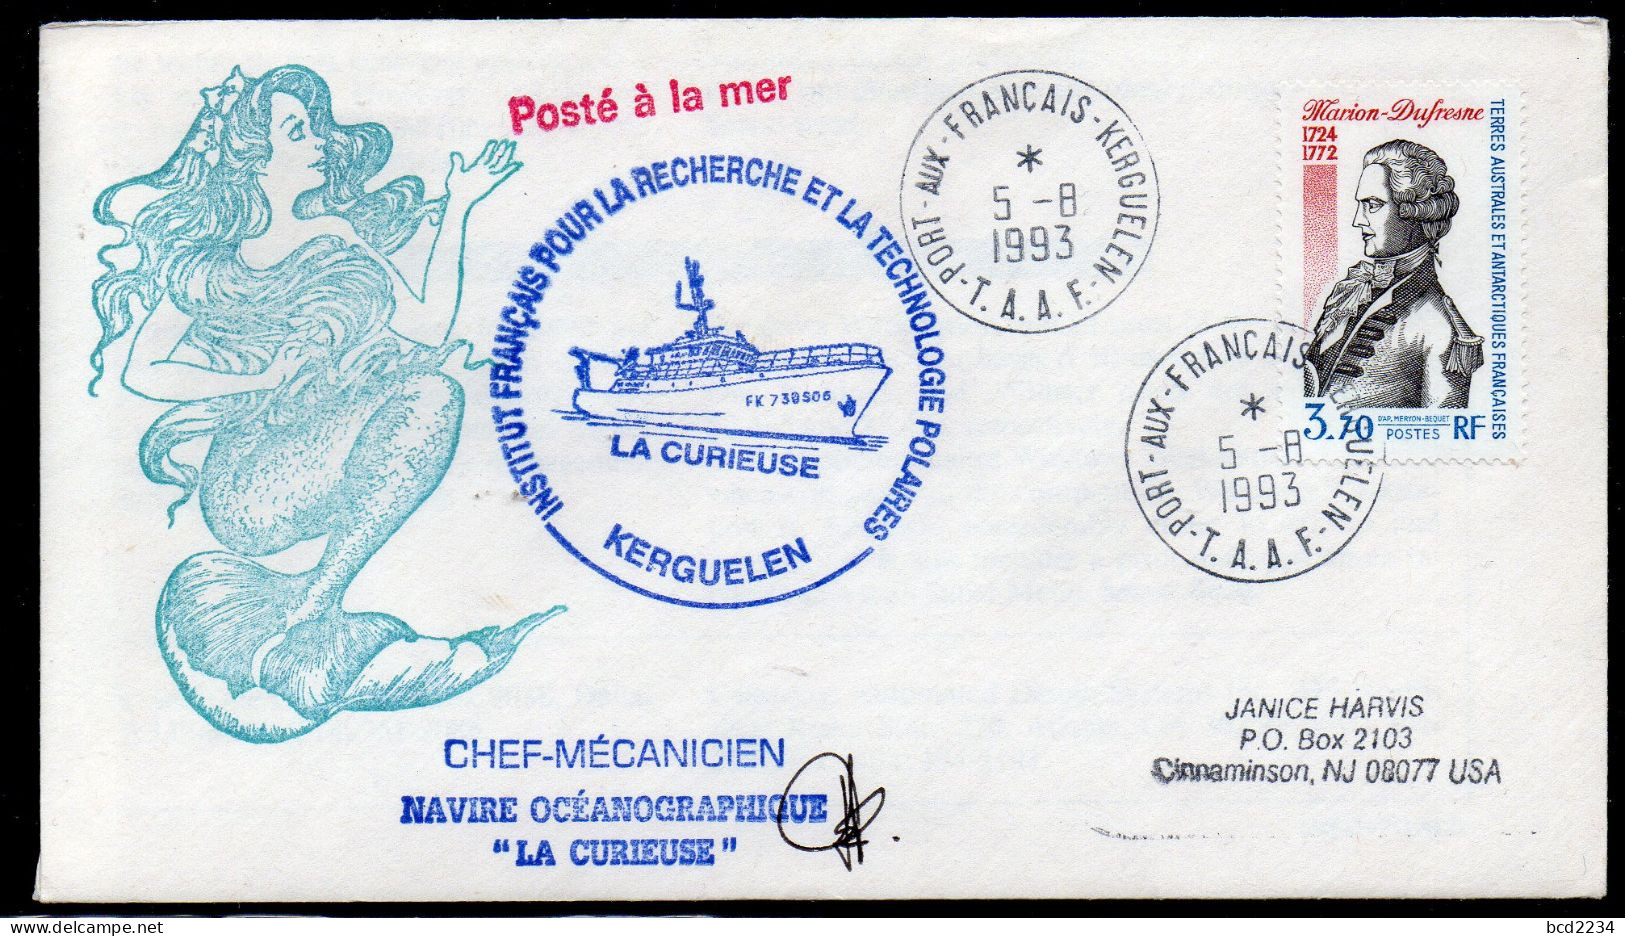 FRANCE1993 ANTARCTIC POLAR COVER CHEF-MECANICIEN LA CURIEUSE KERGUELEN MERMAID INSTITUT POUR RECHERCHE POLAIRES FRANCAIS - Barcos Polares Y Rompehielos